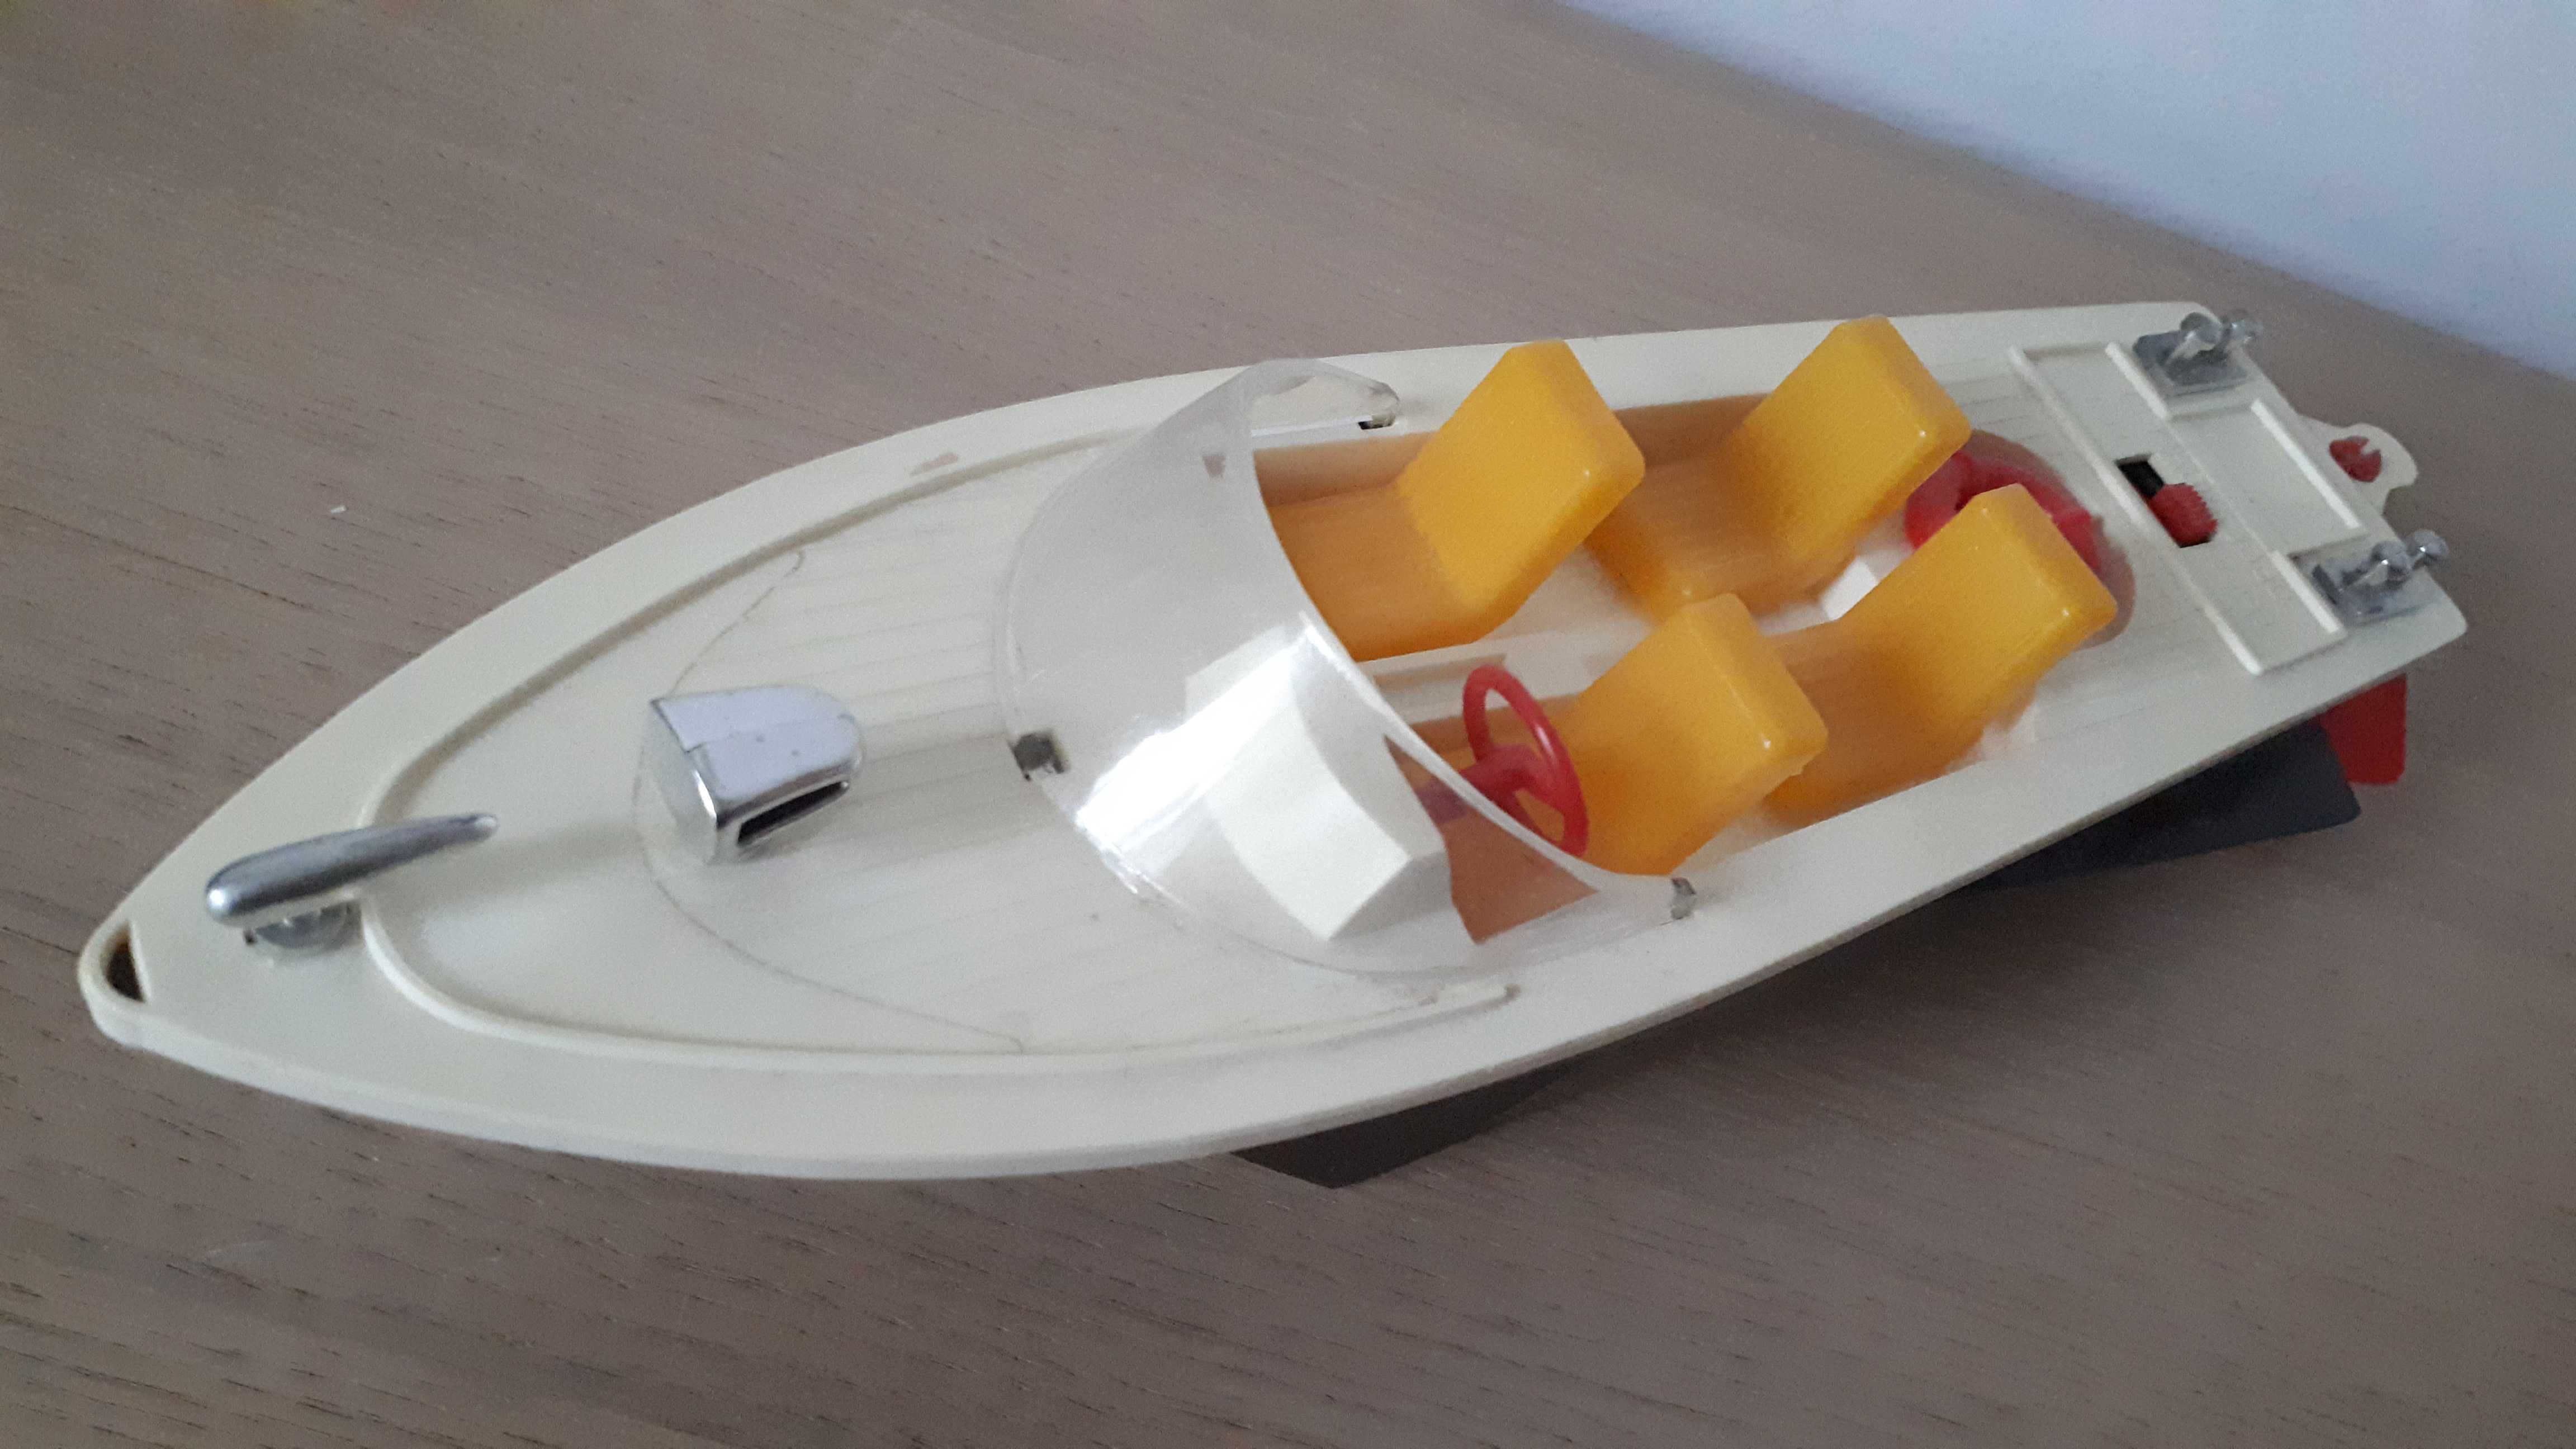 zabawka vintage łódź pływająca